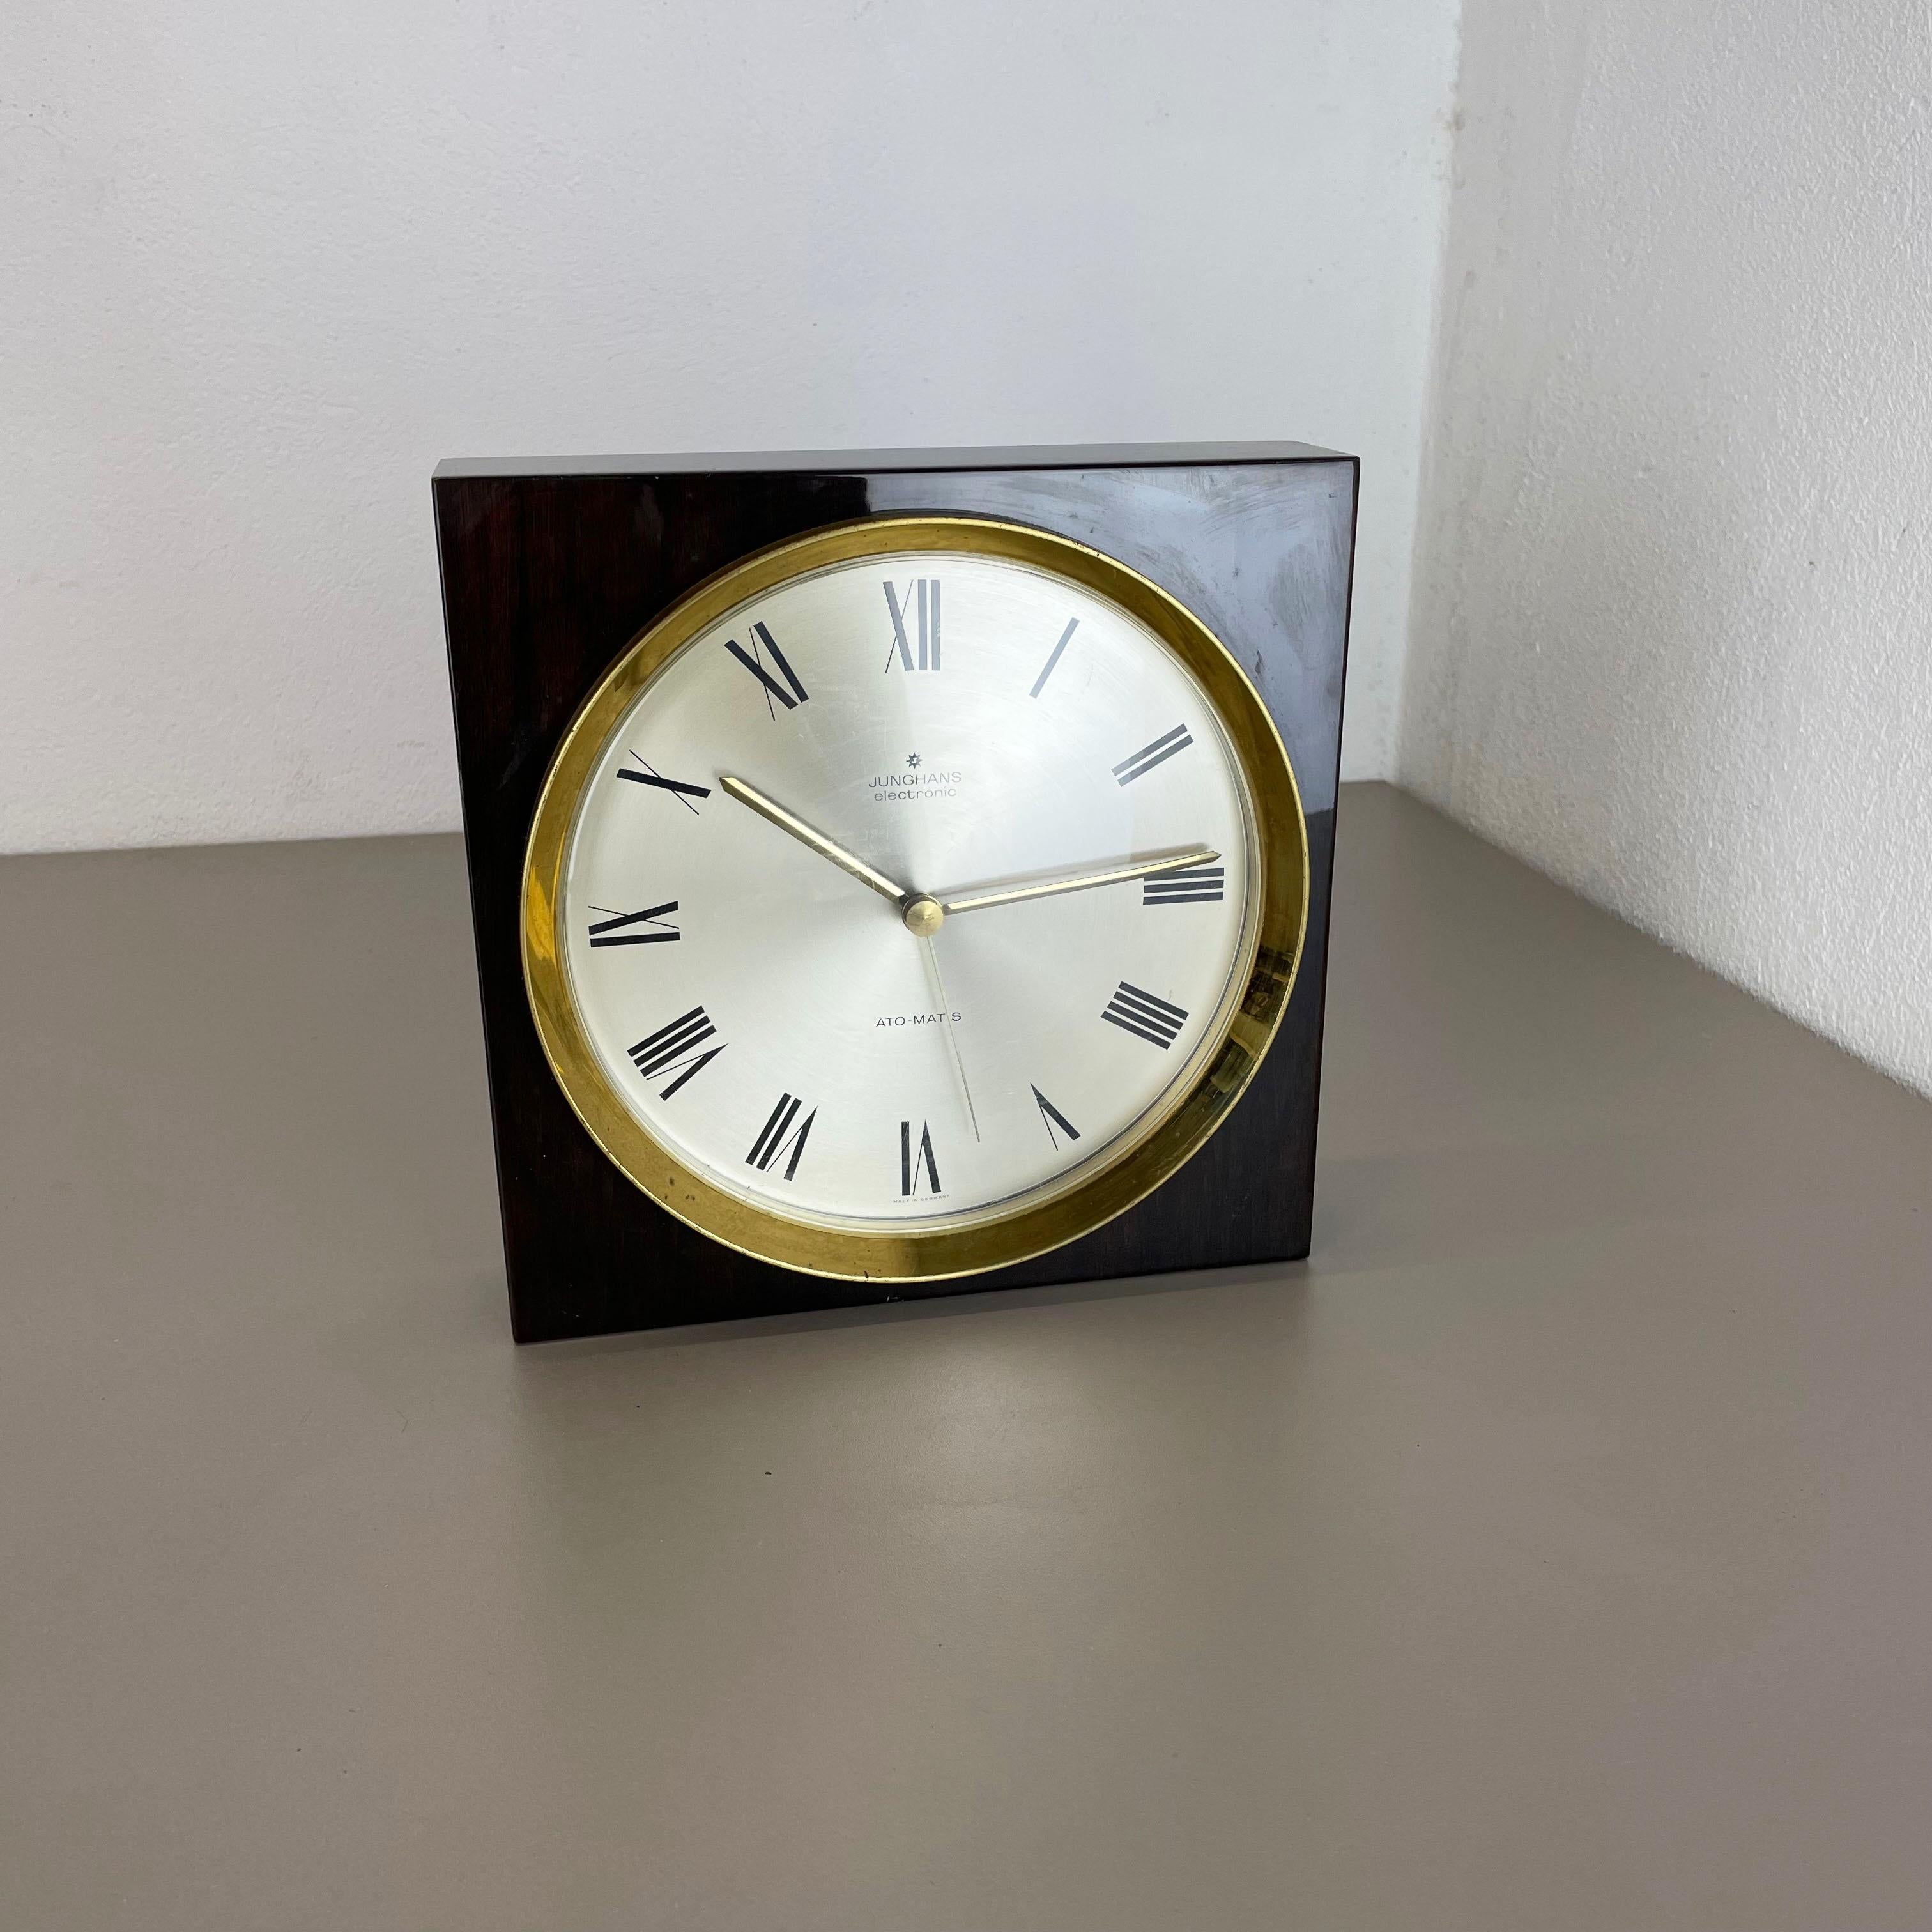 Article :

horloge, utilisable comme horloge de table et murale



Origine :

Allemagne


Producteur :

Junghans, Allemagne


Âge :

1970s





Cette horloge de table originale en bois a été produite dans les années 1970 par